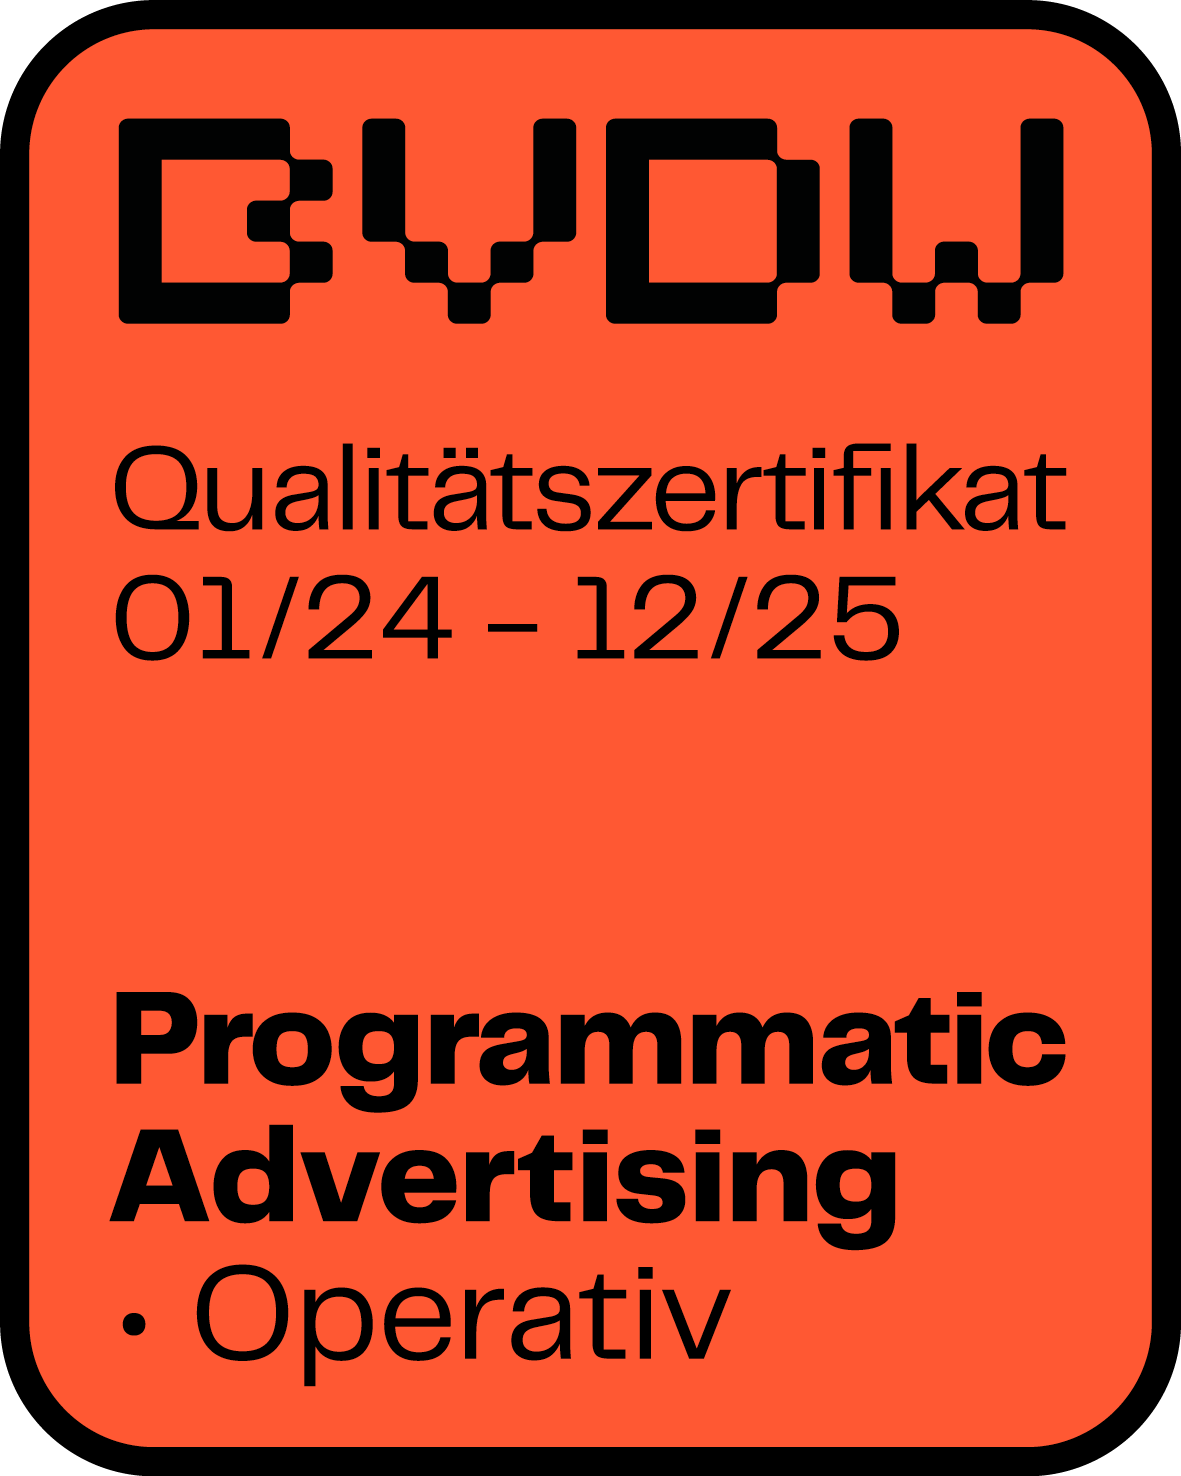 Qualitätssiegel des Bundesverbands für digitale Wirtschaft (BVDW) im Programmatic Advertising